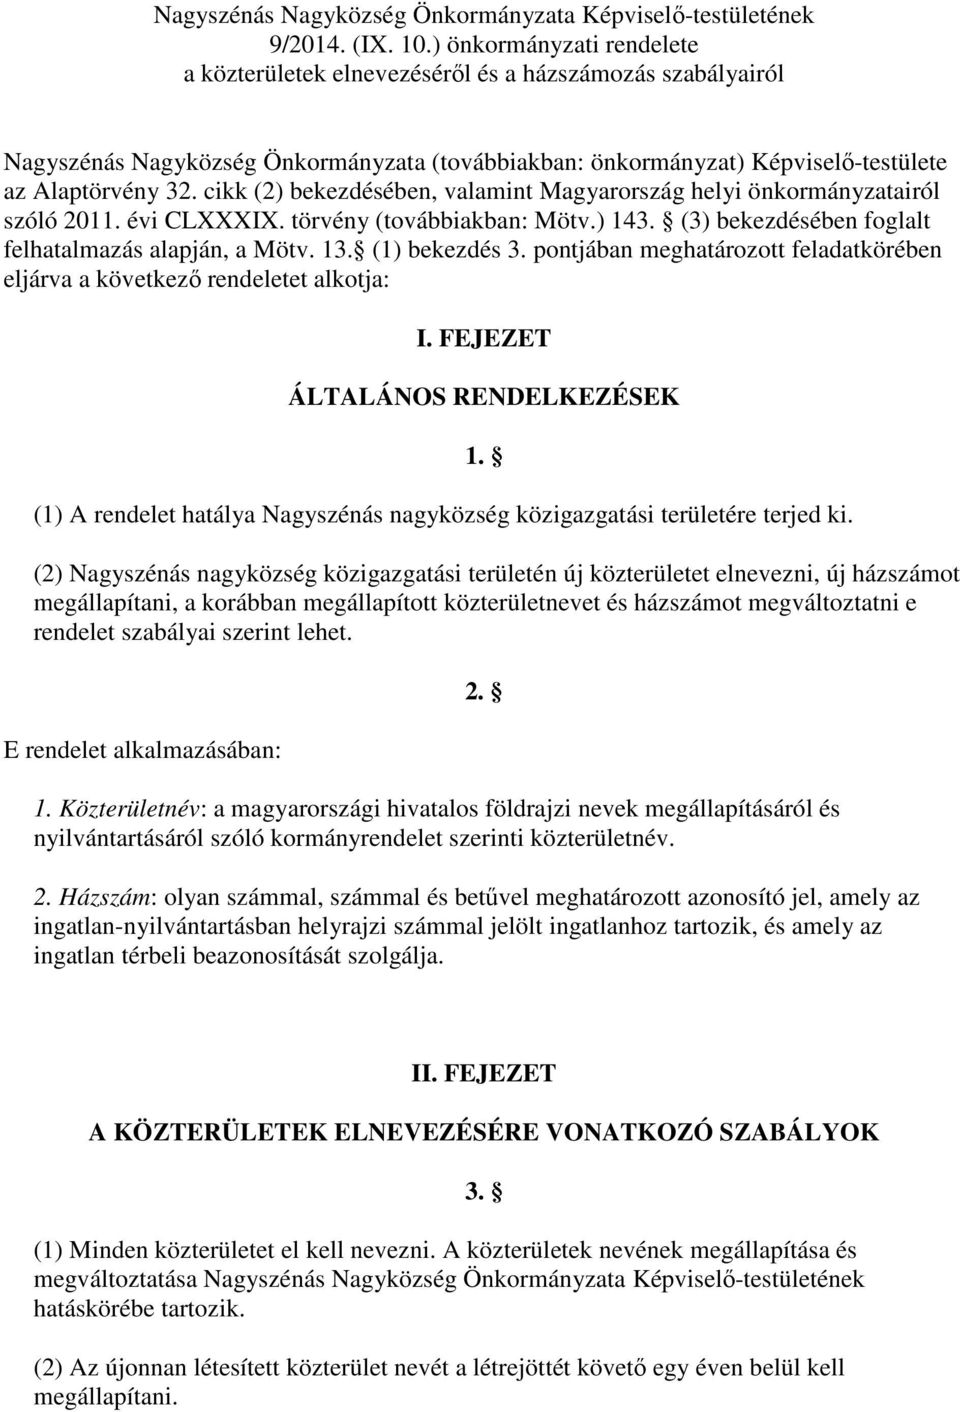 cikk (2) bekezdésében, valamint Magyarország helyi önkormányzatairól szóló 2011. évi CLXXXIX. törvény (továbbiakban: Mötv.) 143. (3) bekezdésében foglalt felhatalmazás alapján, a Mötv. 13.